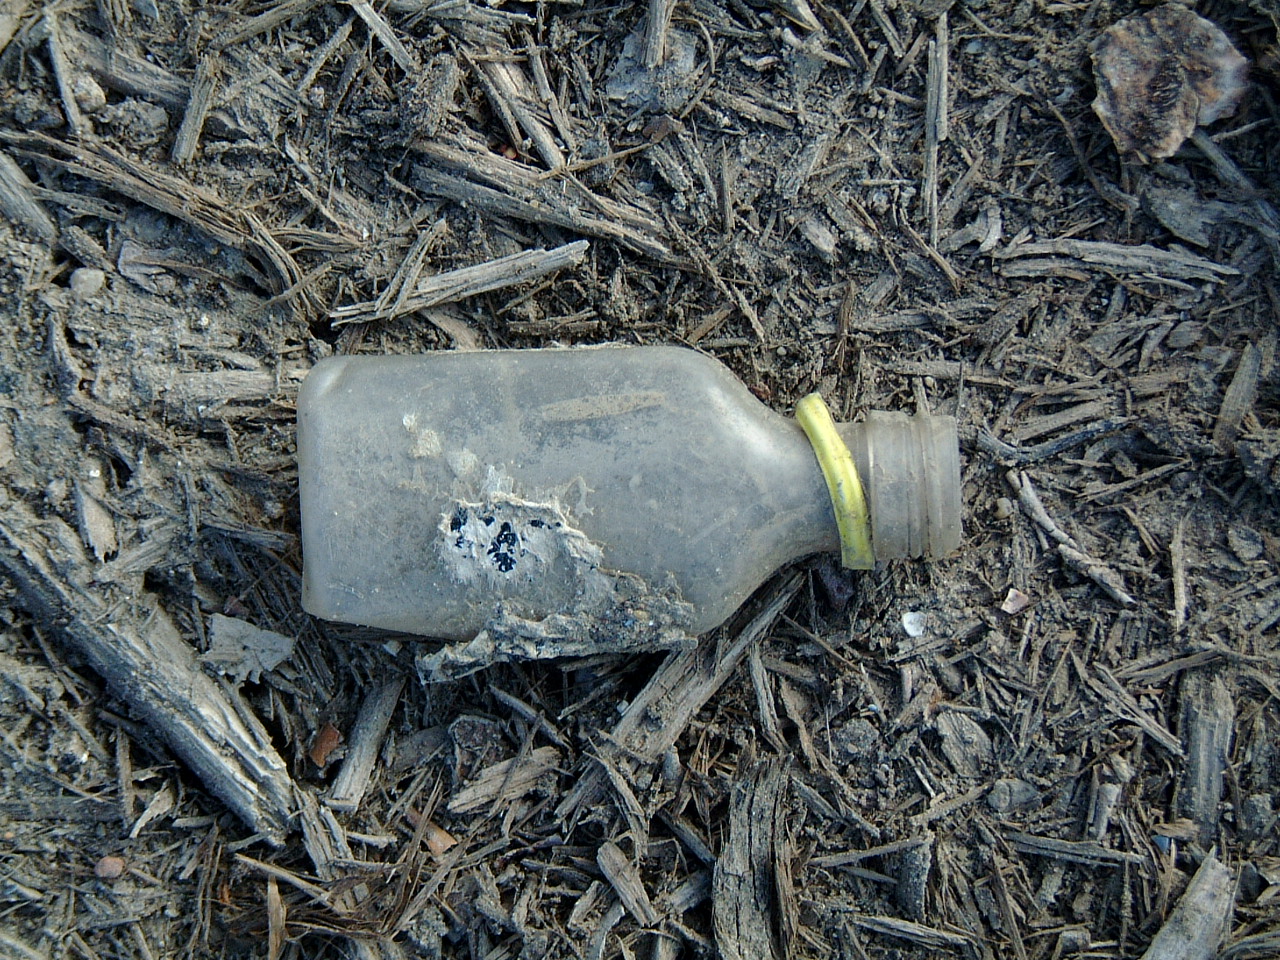 maartent bottle hip flask plastic rubbish thrown away